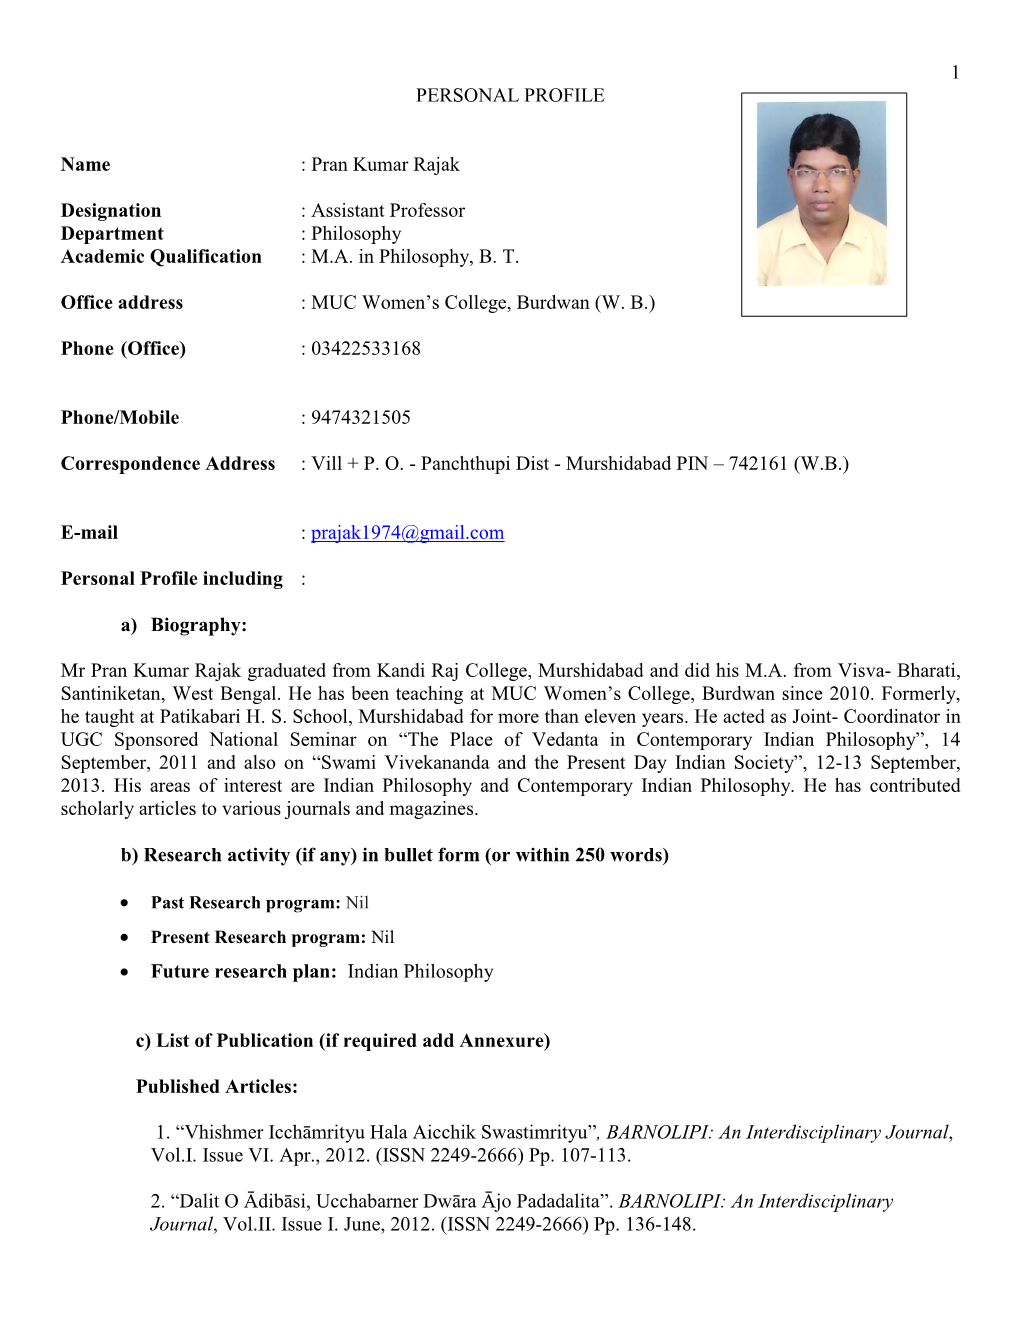 1 PERSONAL PROFILE Name : Pran Kumar